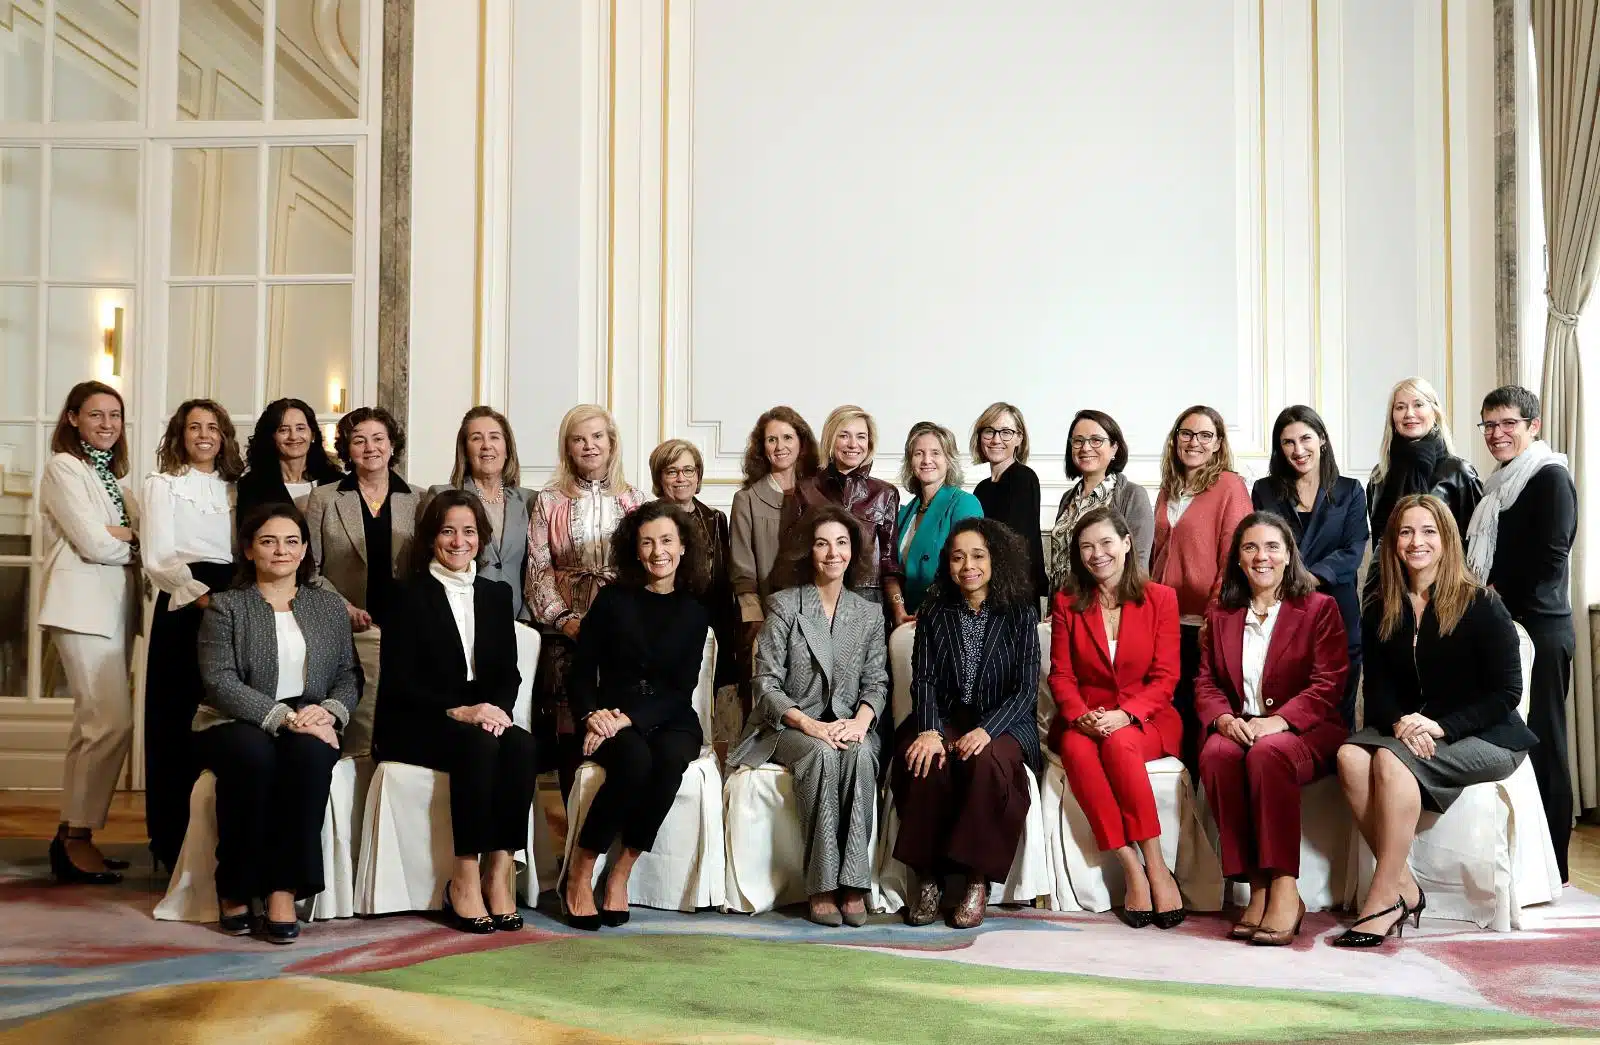 La igualdad, eje del encuentro de la presidenta electa de la IBA junto con 25 juristas españolas con la embajadora estadounidense